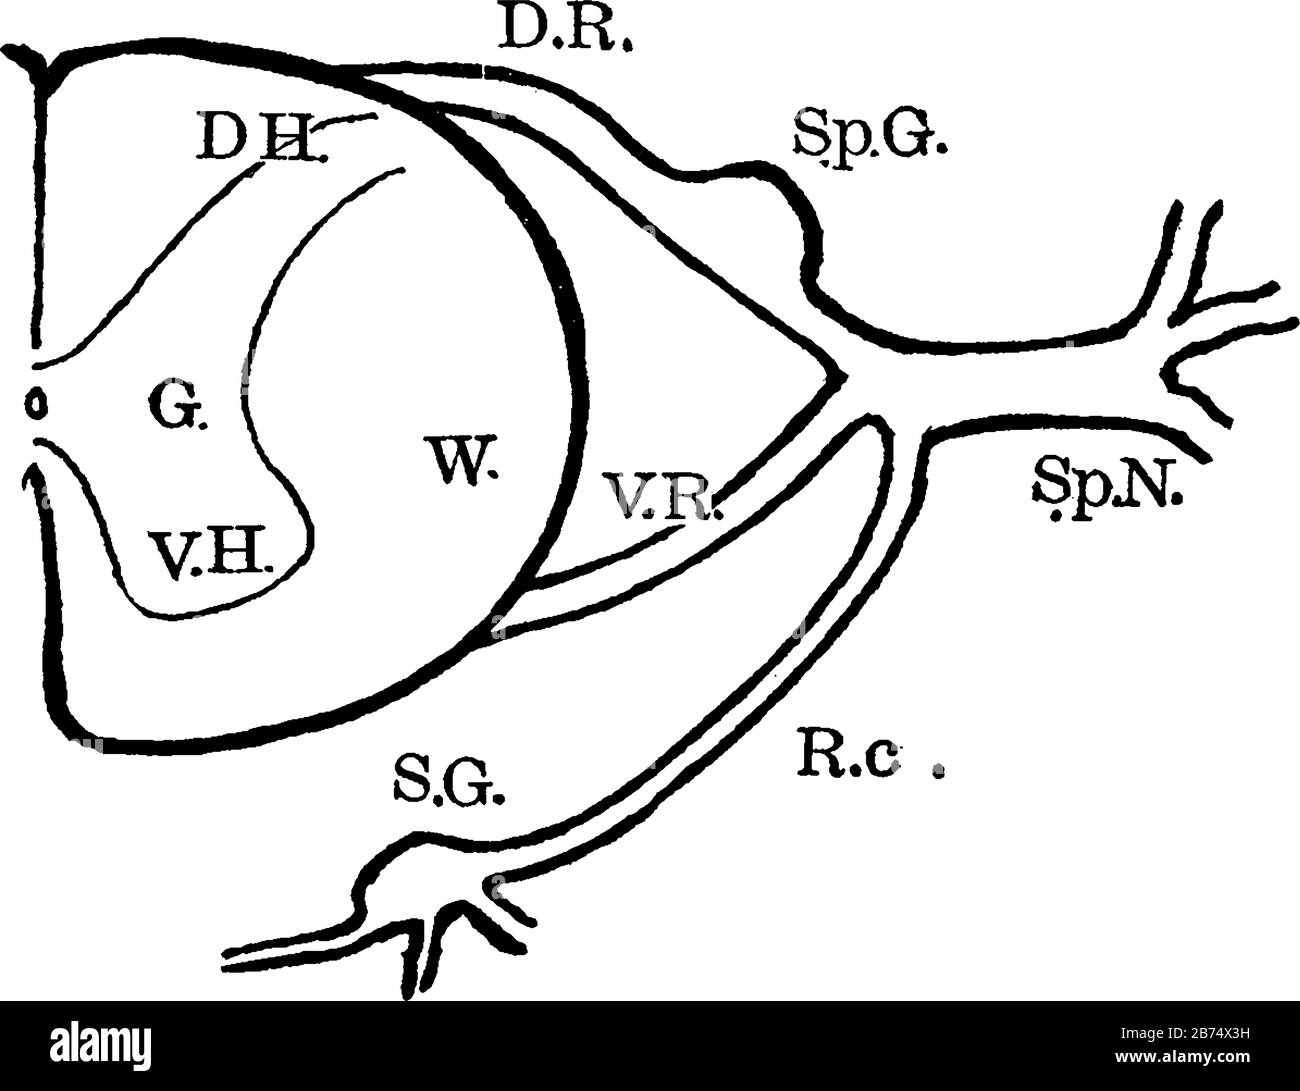 Diagramm mit Anatomie der Spinalnervenwurzeln und angrenzenden Teilen, Vintage-Linien-Zeichnung oder Gravurdarstellung. Stock Vektor